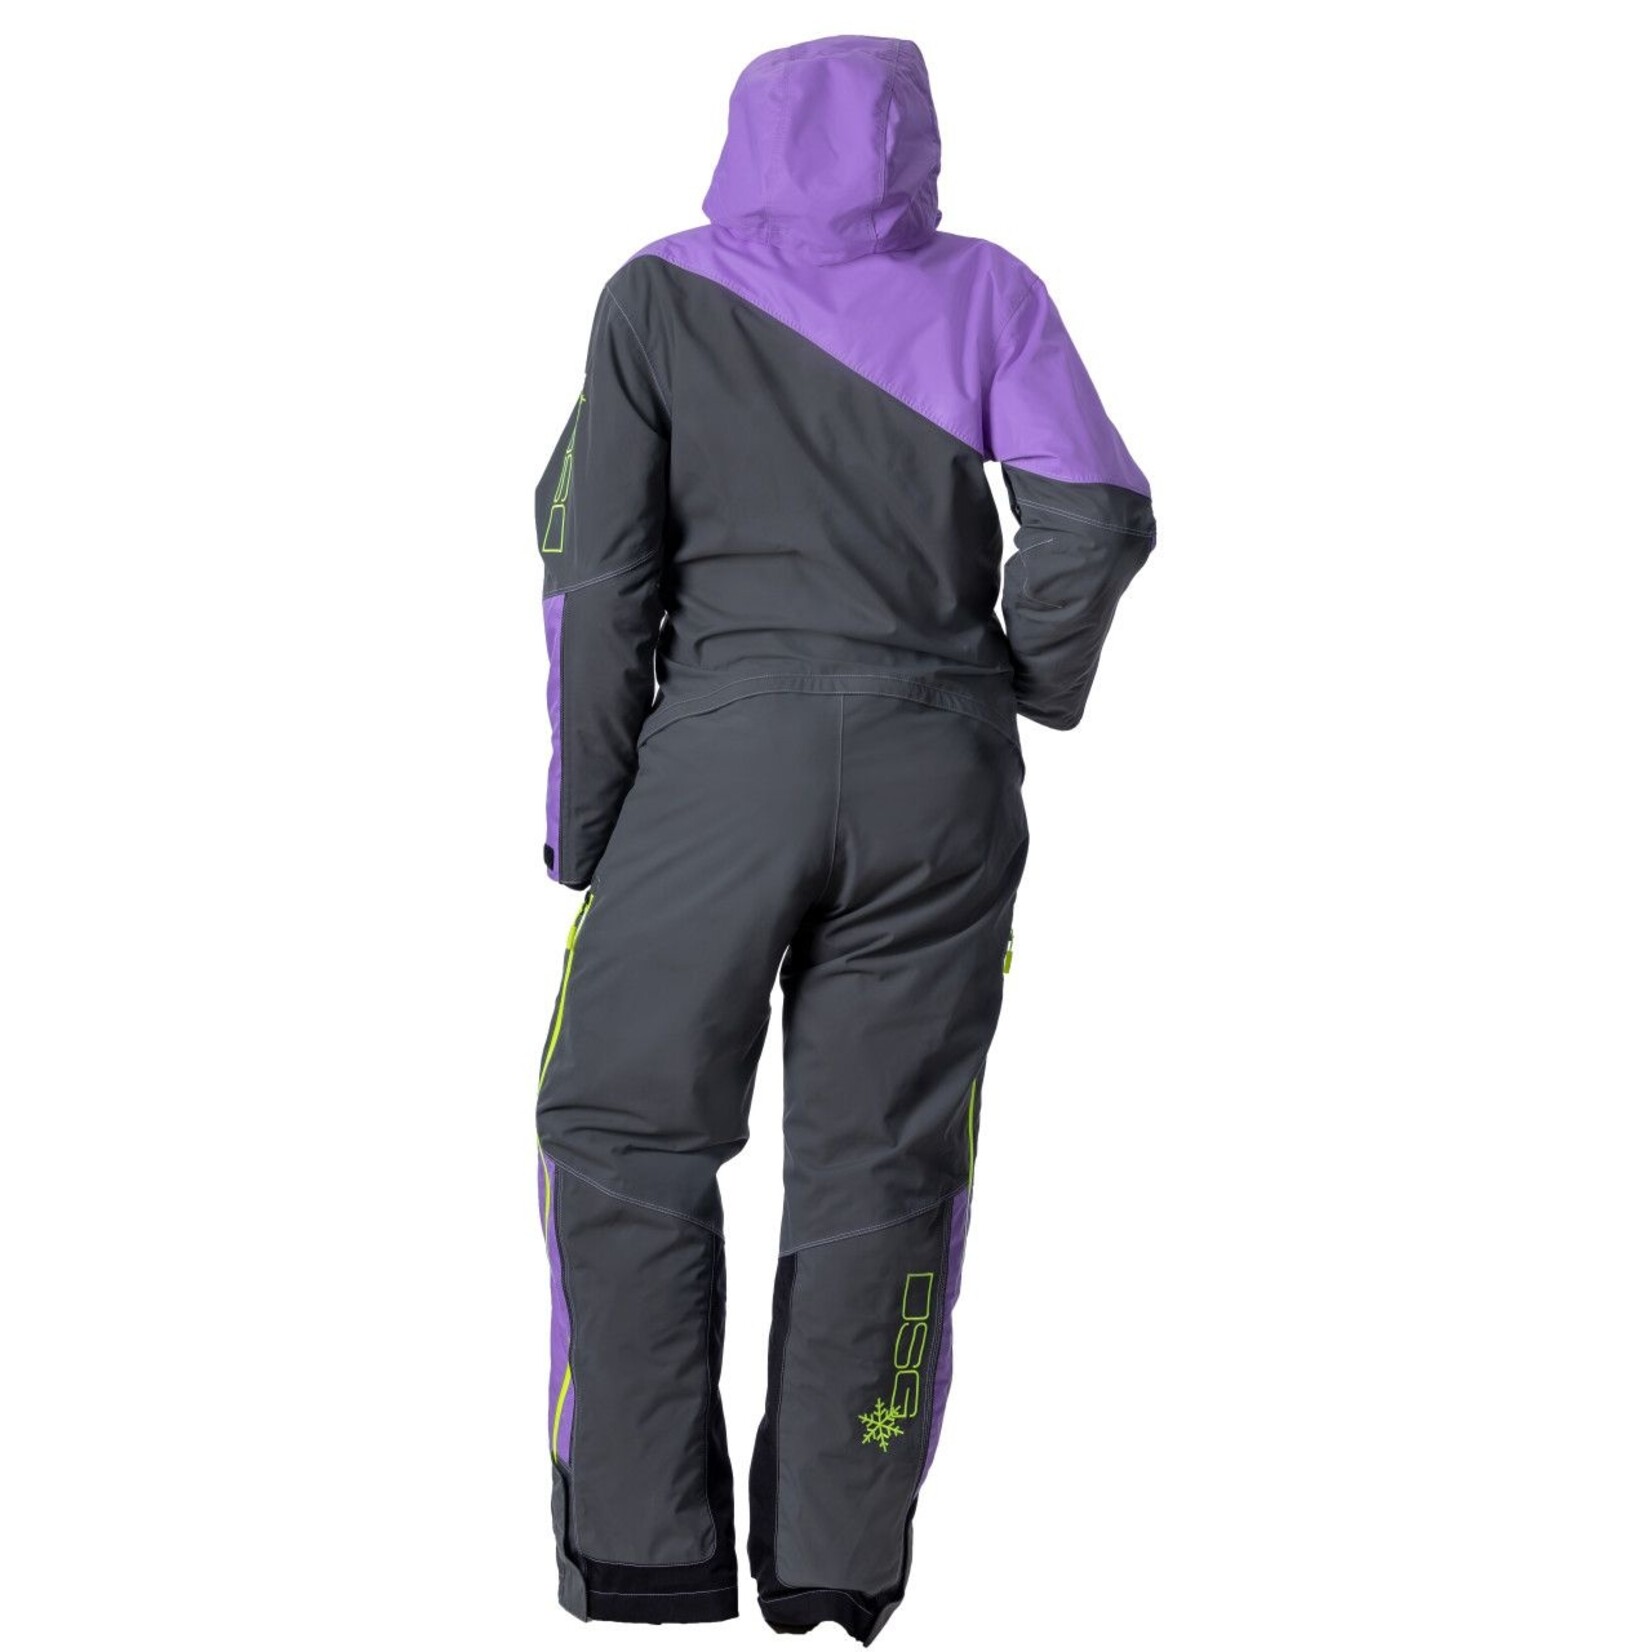 DSG Outerwear Monosuit Dsg 2.0 Lavender/Grey